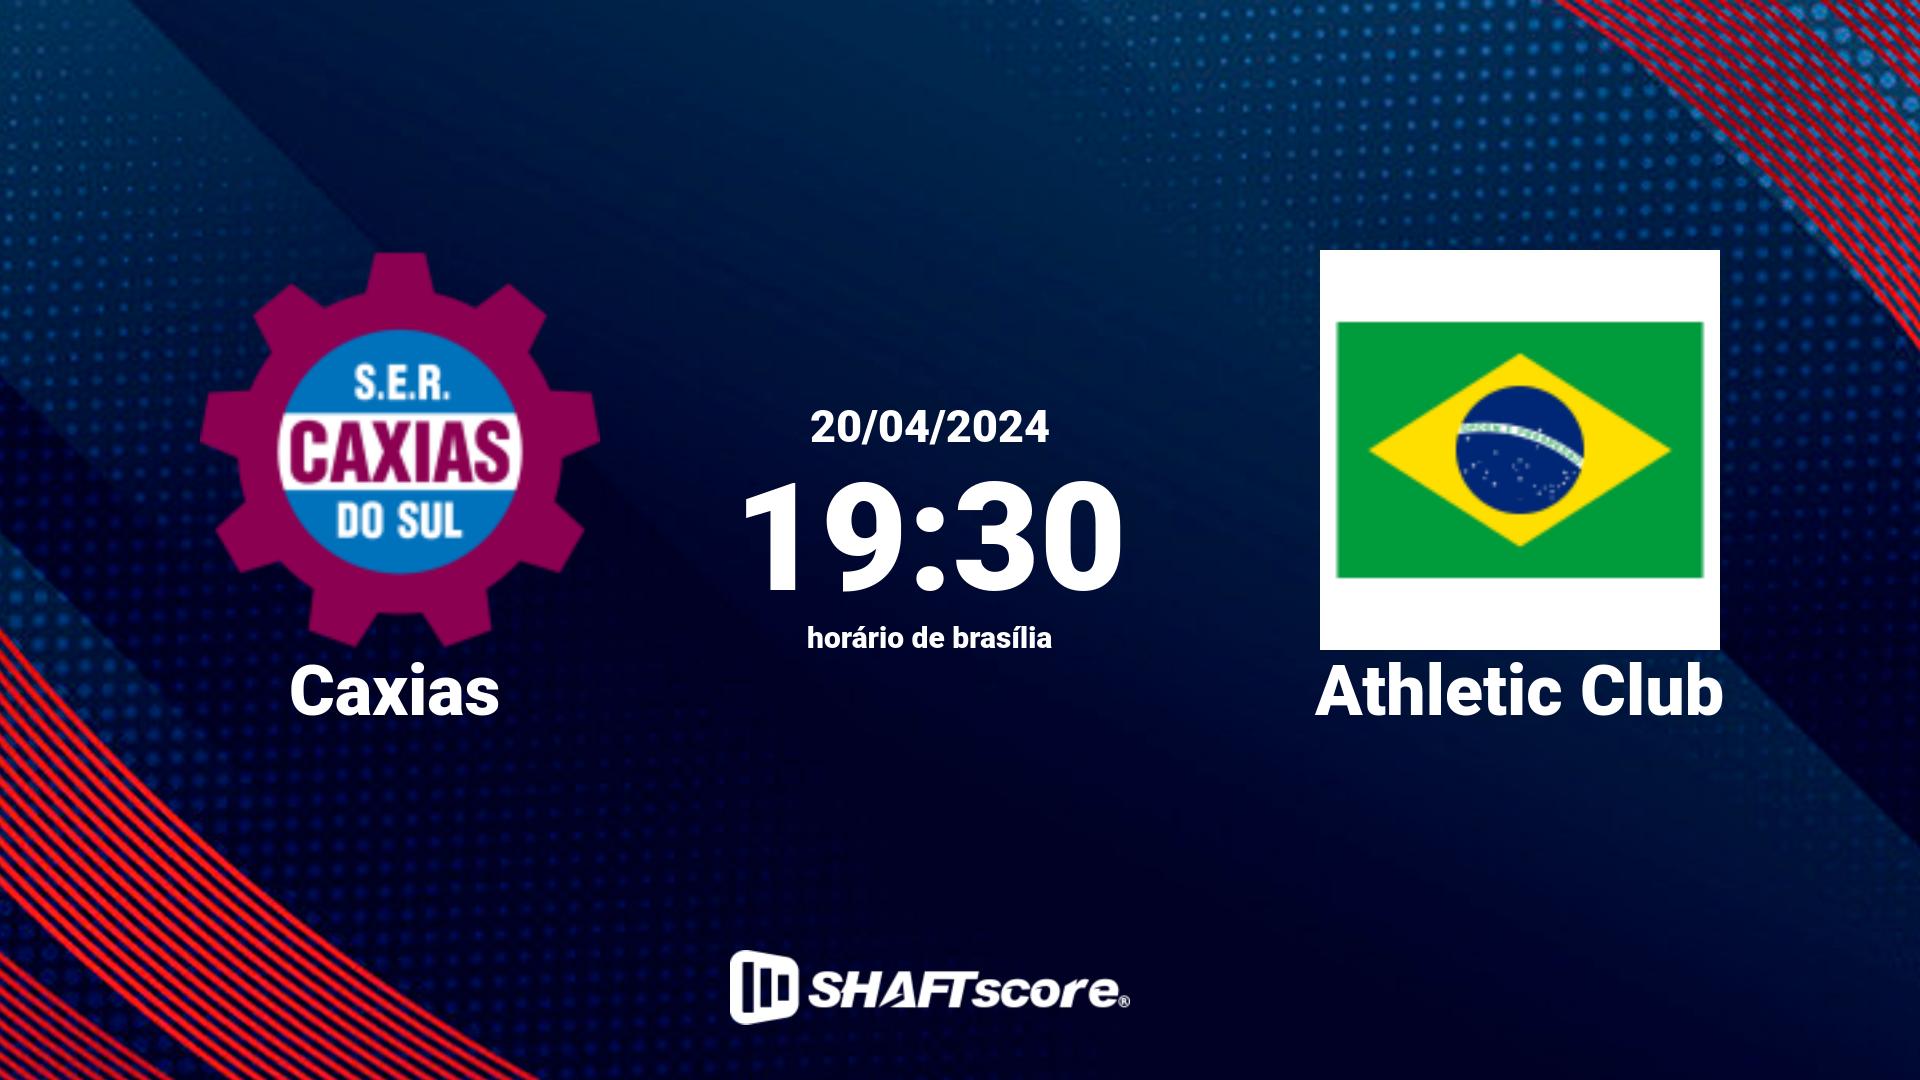 Estatísticas do jogo Caxias vs Athletic Club 20.04 19:30